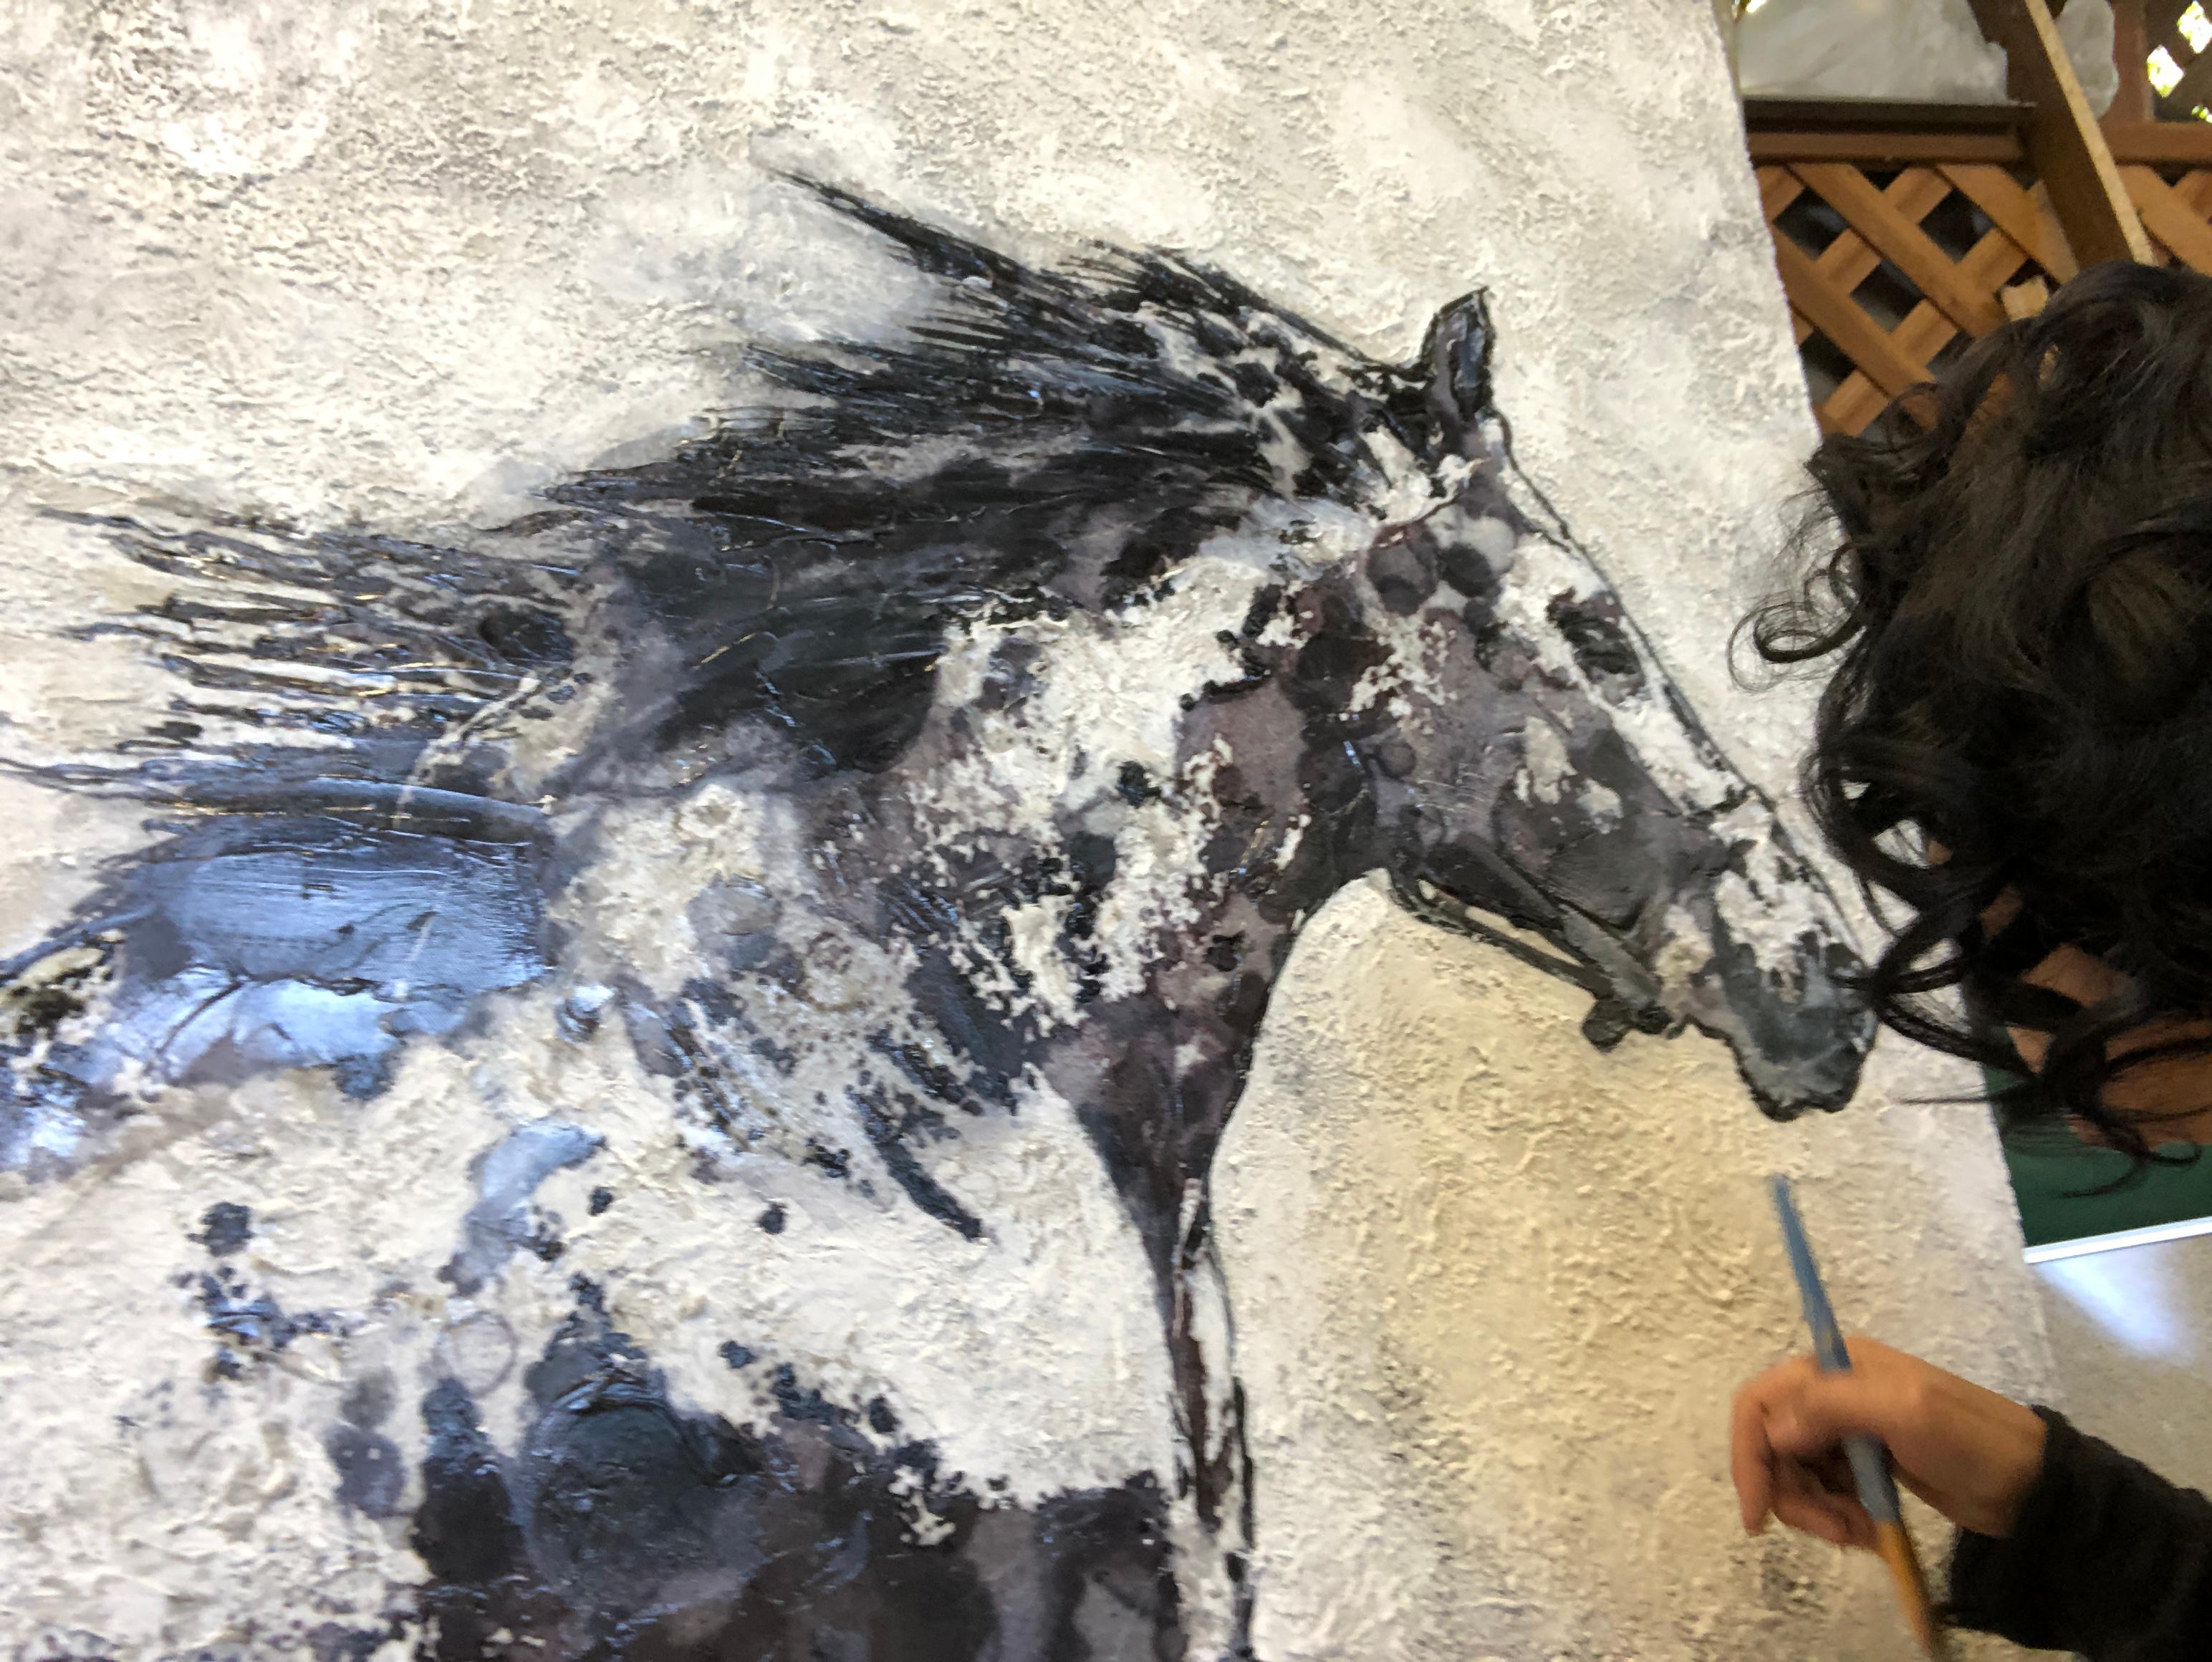 Laufendes Pferd Weiß Schwarz Mixed Media Malerei auf Leinwand 48 x 36